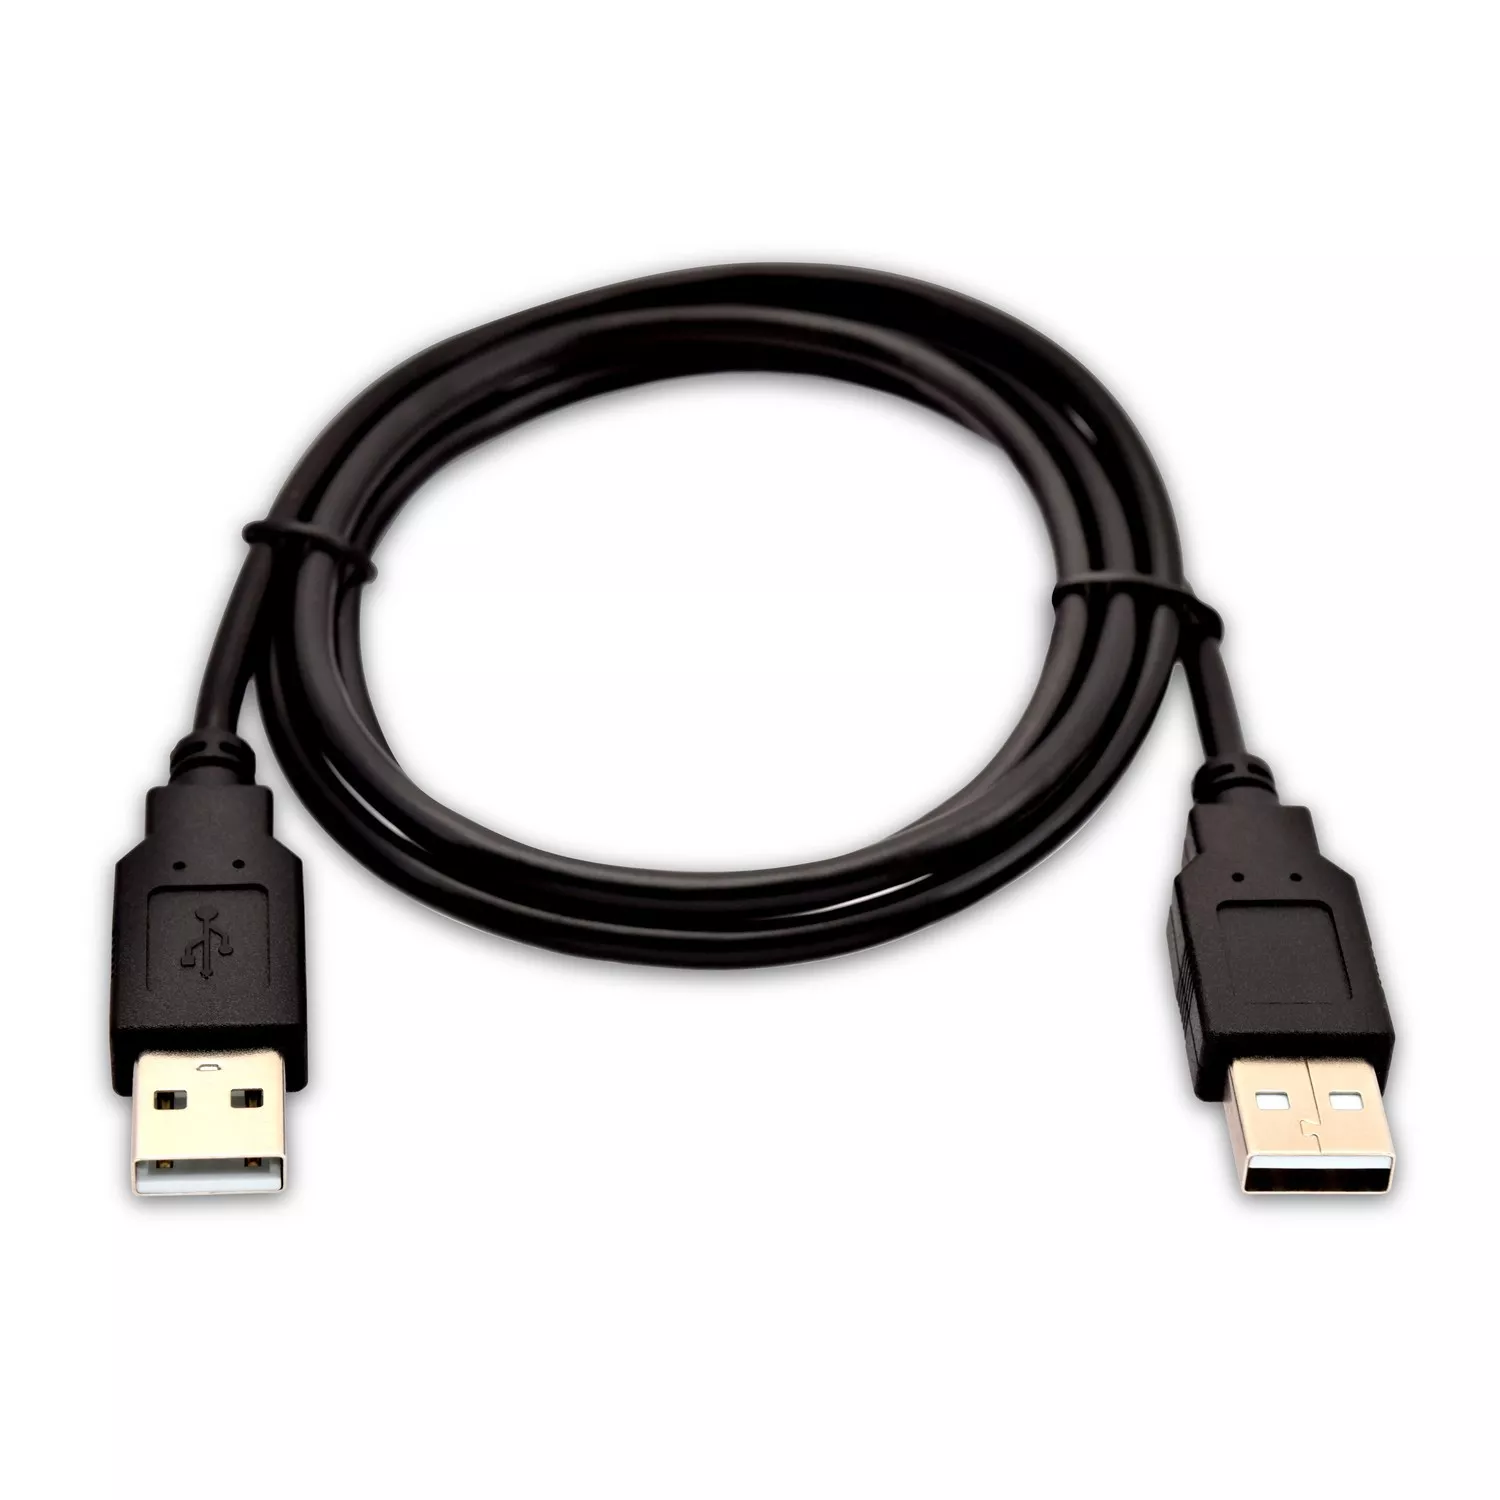 Achat V7 Câble USB 2.0 A mâle vers USB 2.0 A mâle, noir 2m 6.6ft au meilleur prix